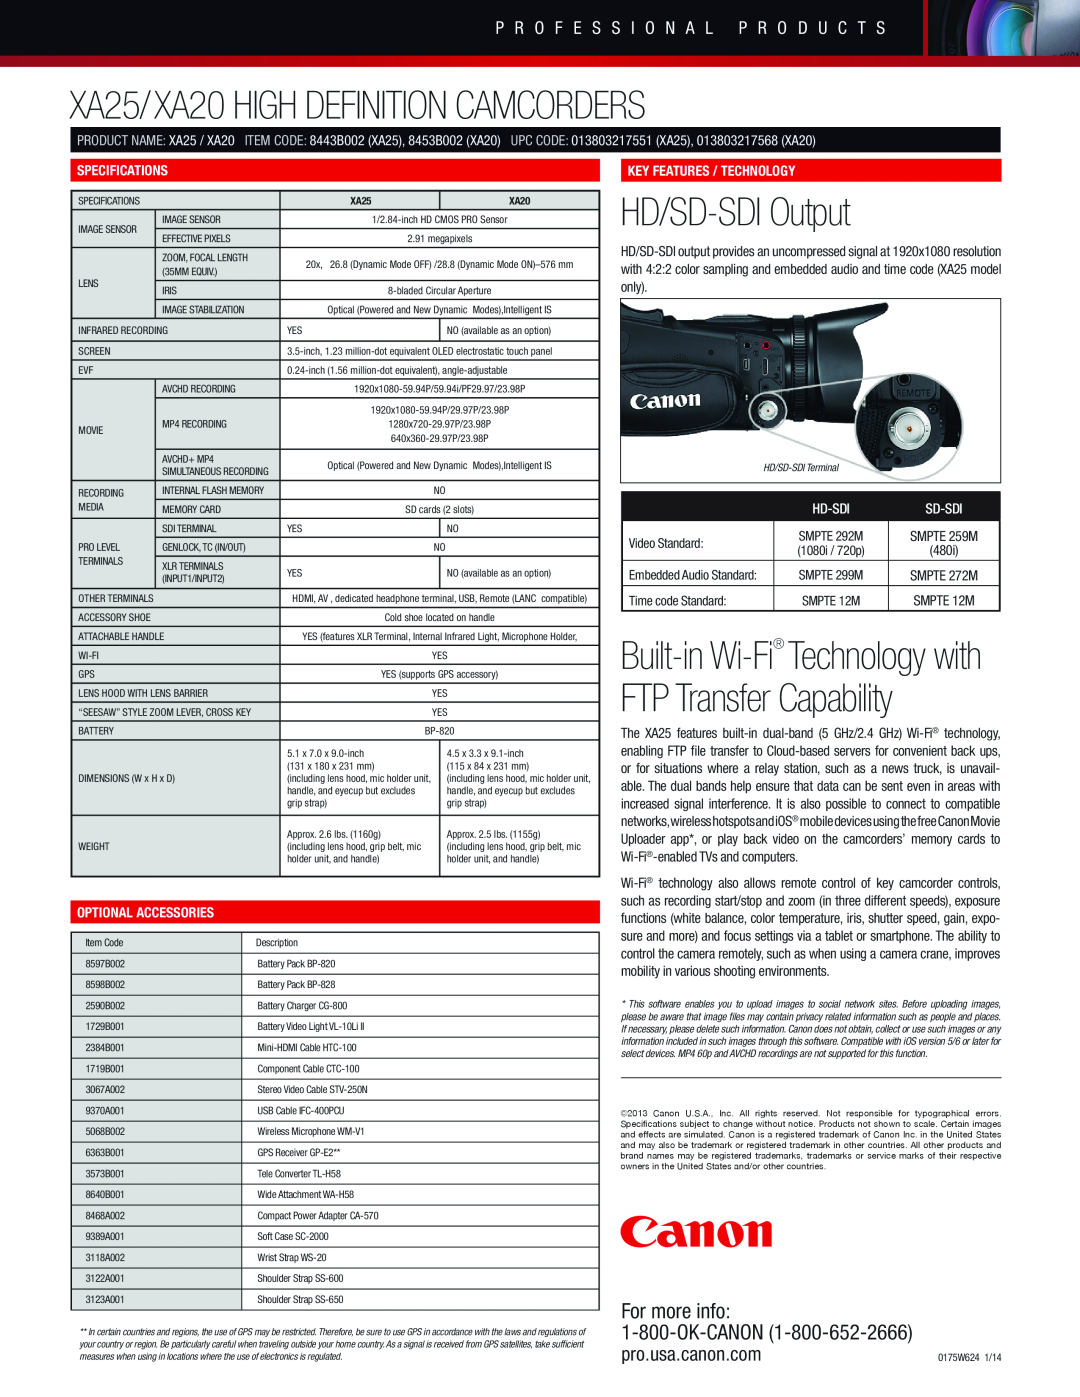 Canon high definition camcorder manual XA25/XA20 HIGH DEFINITION CAMCORDERS, HD/SD-SDI Output, For more info 1-800-OK-CANON 